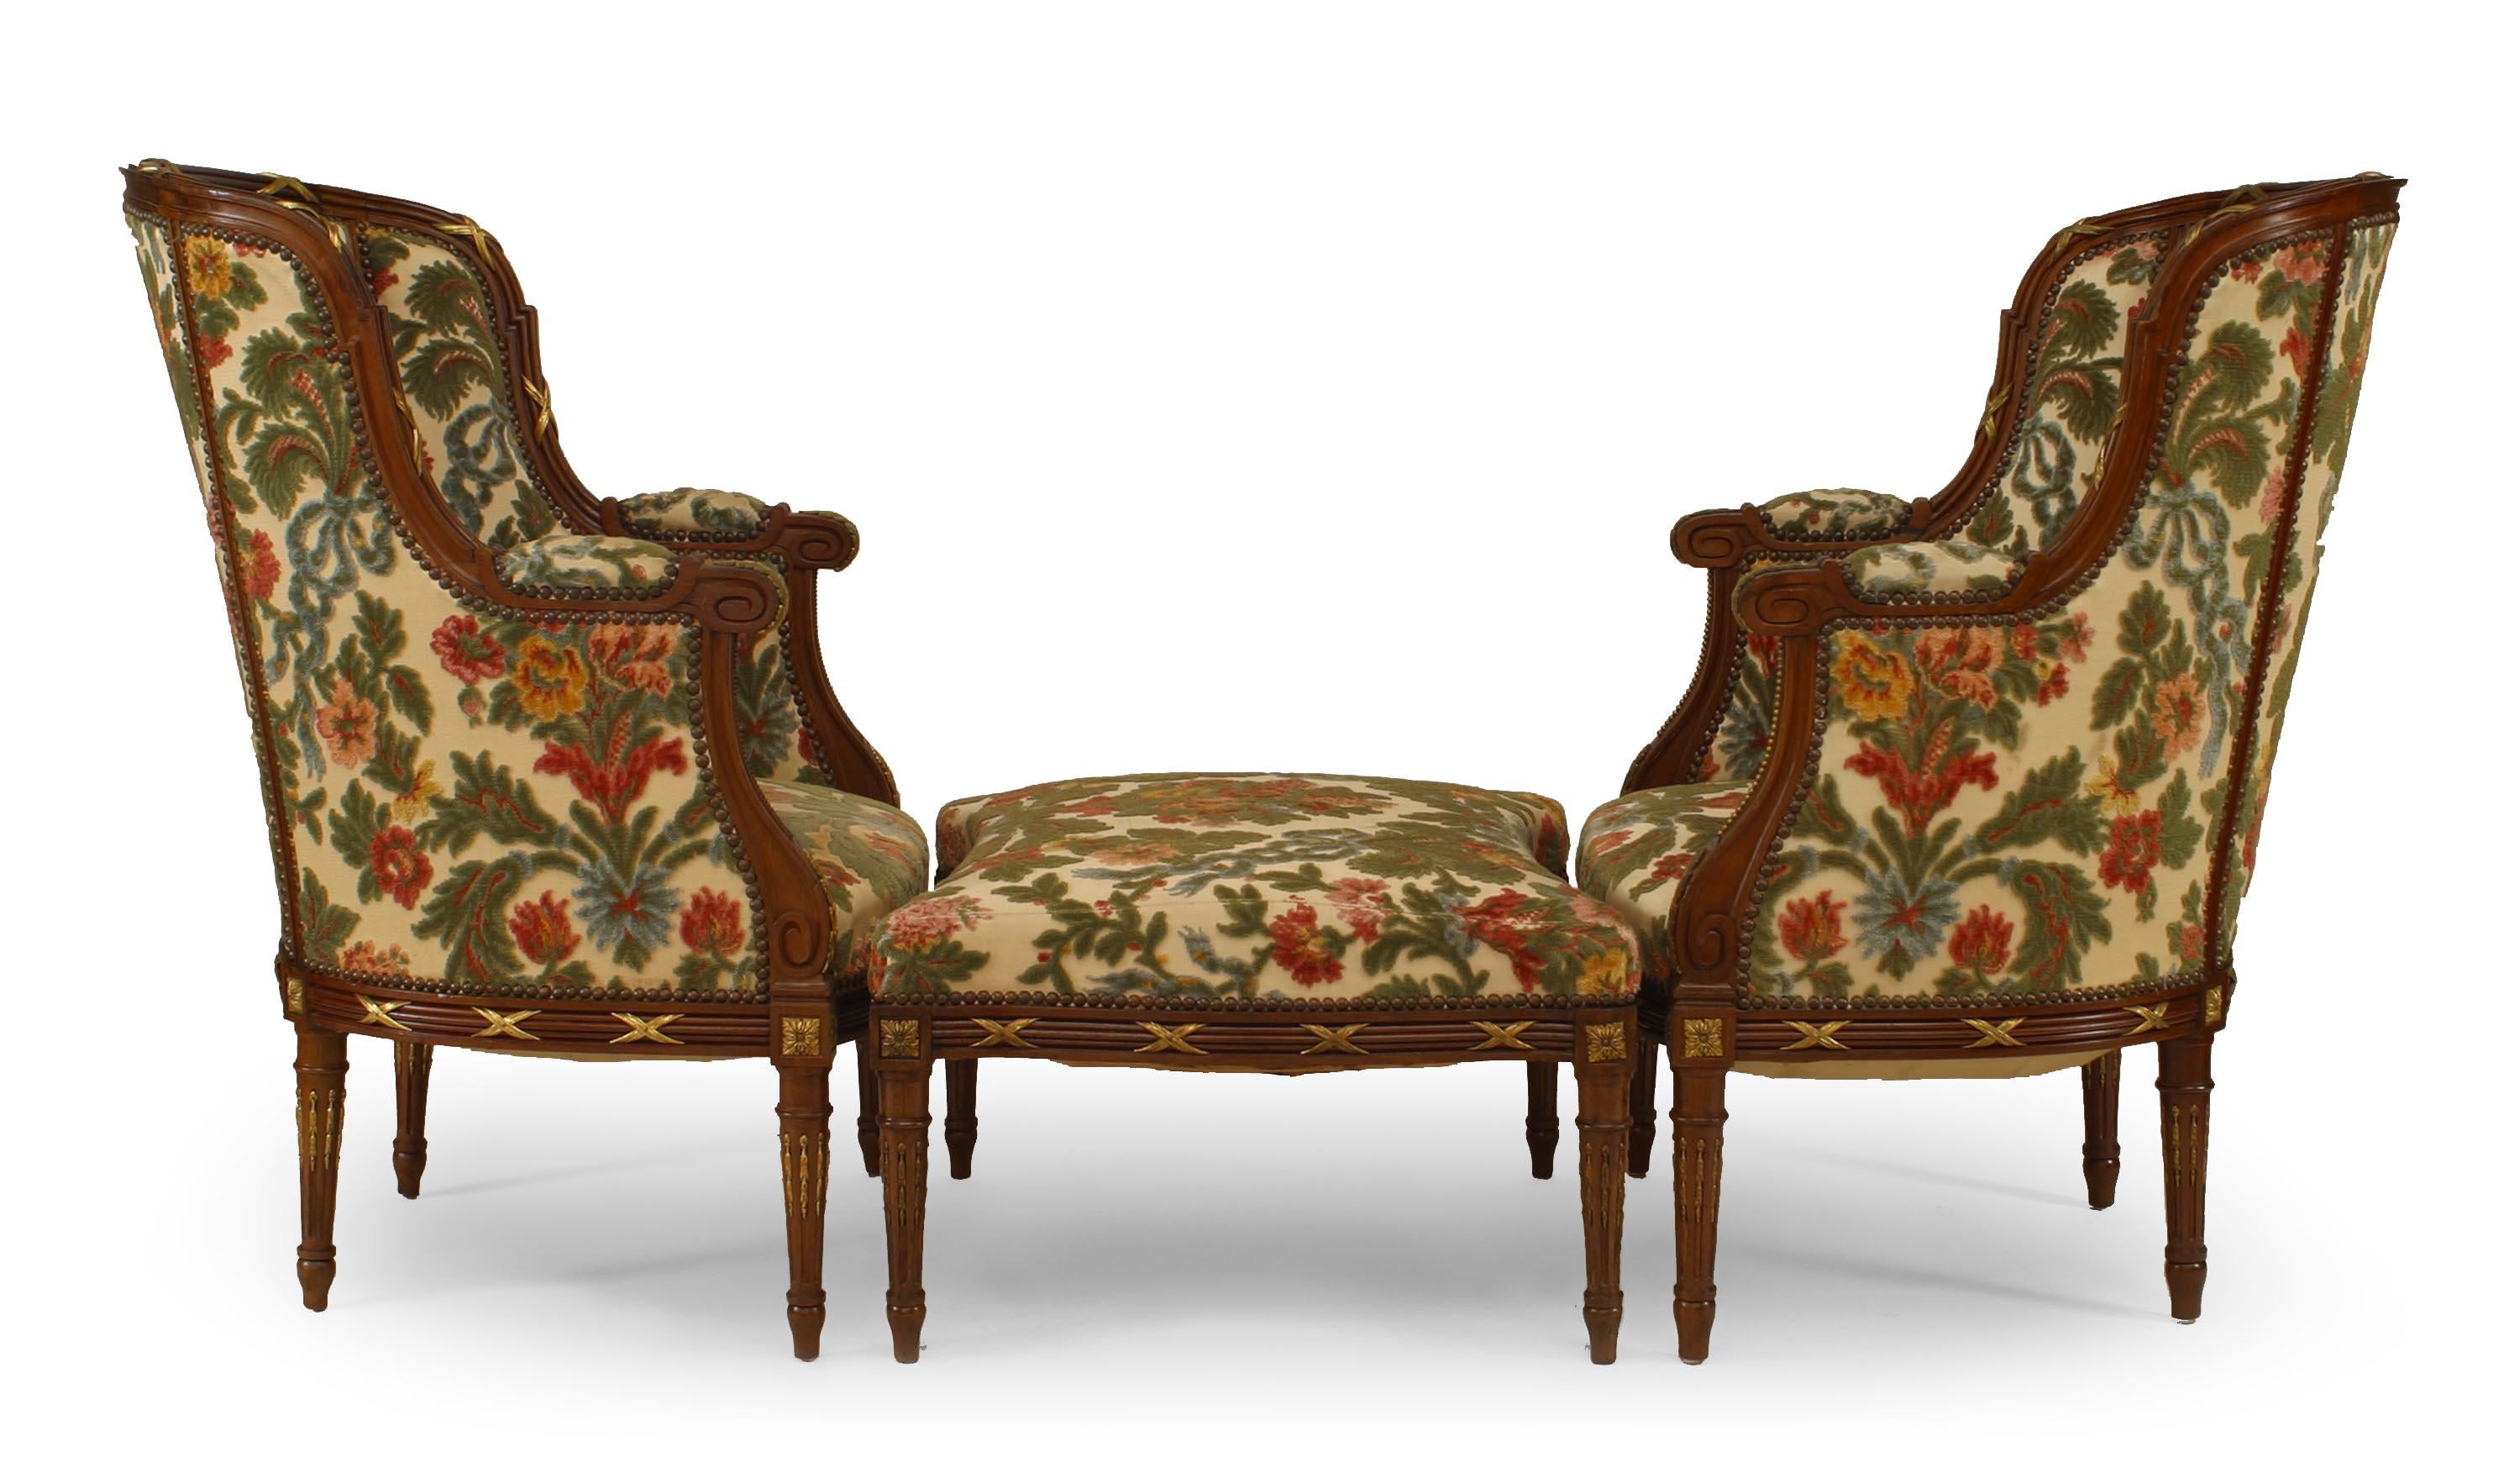 3-teiliger Satz französischer Liegestühle im Louis-XVI-Stil (20. Jahrhundert) mit floralem Samtbezug und passender Ottomane (PREIS IM SET).
 